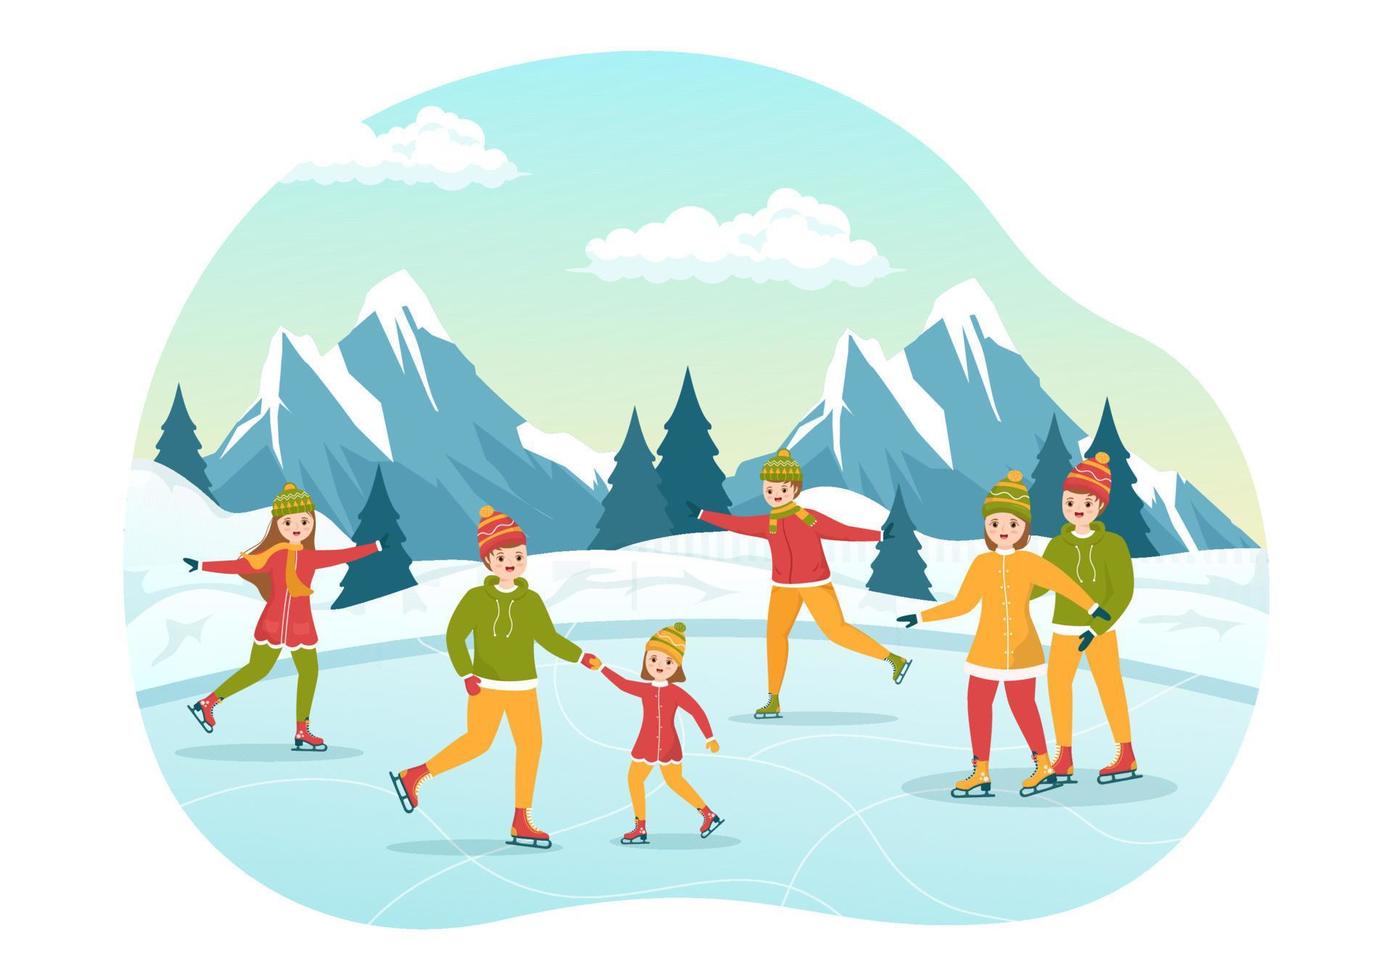 hombres, mujeres y niños patinando en la pista de hielo vistiendo ropa de invierno para actividades al aire libre en dibujos animados planos dibujados a mano ilustración de plantillas vector